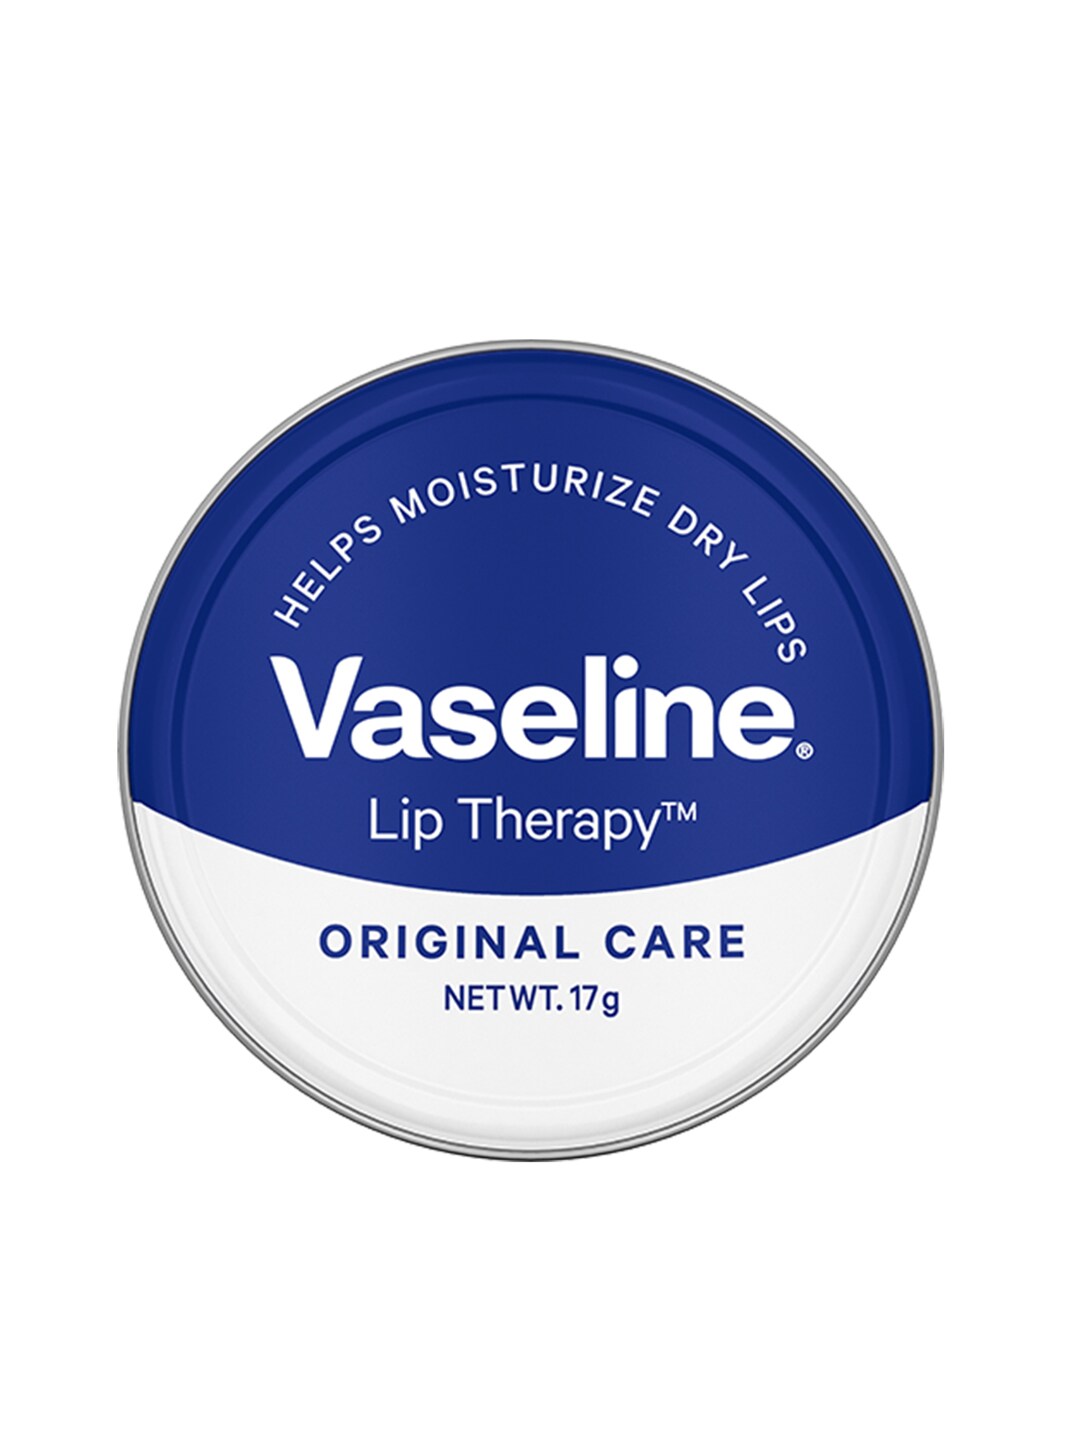 Vaseline Lip Therapy Glossy Shine Original Care Lip Balm - 17 g Price in India